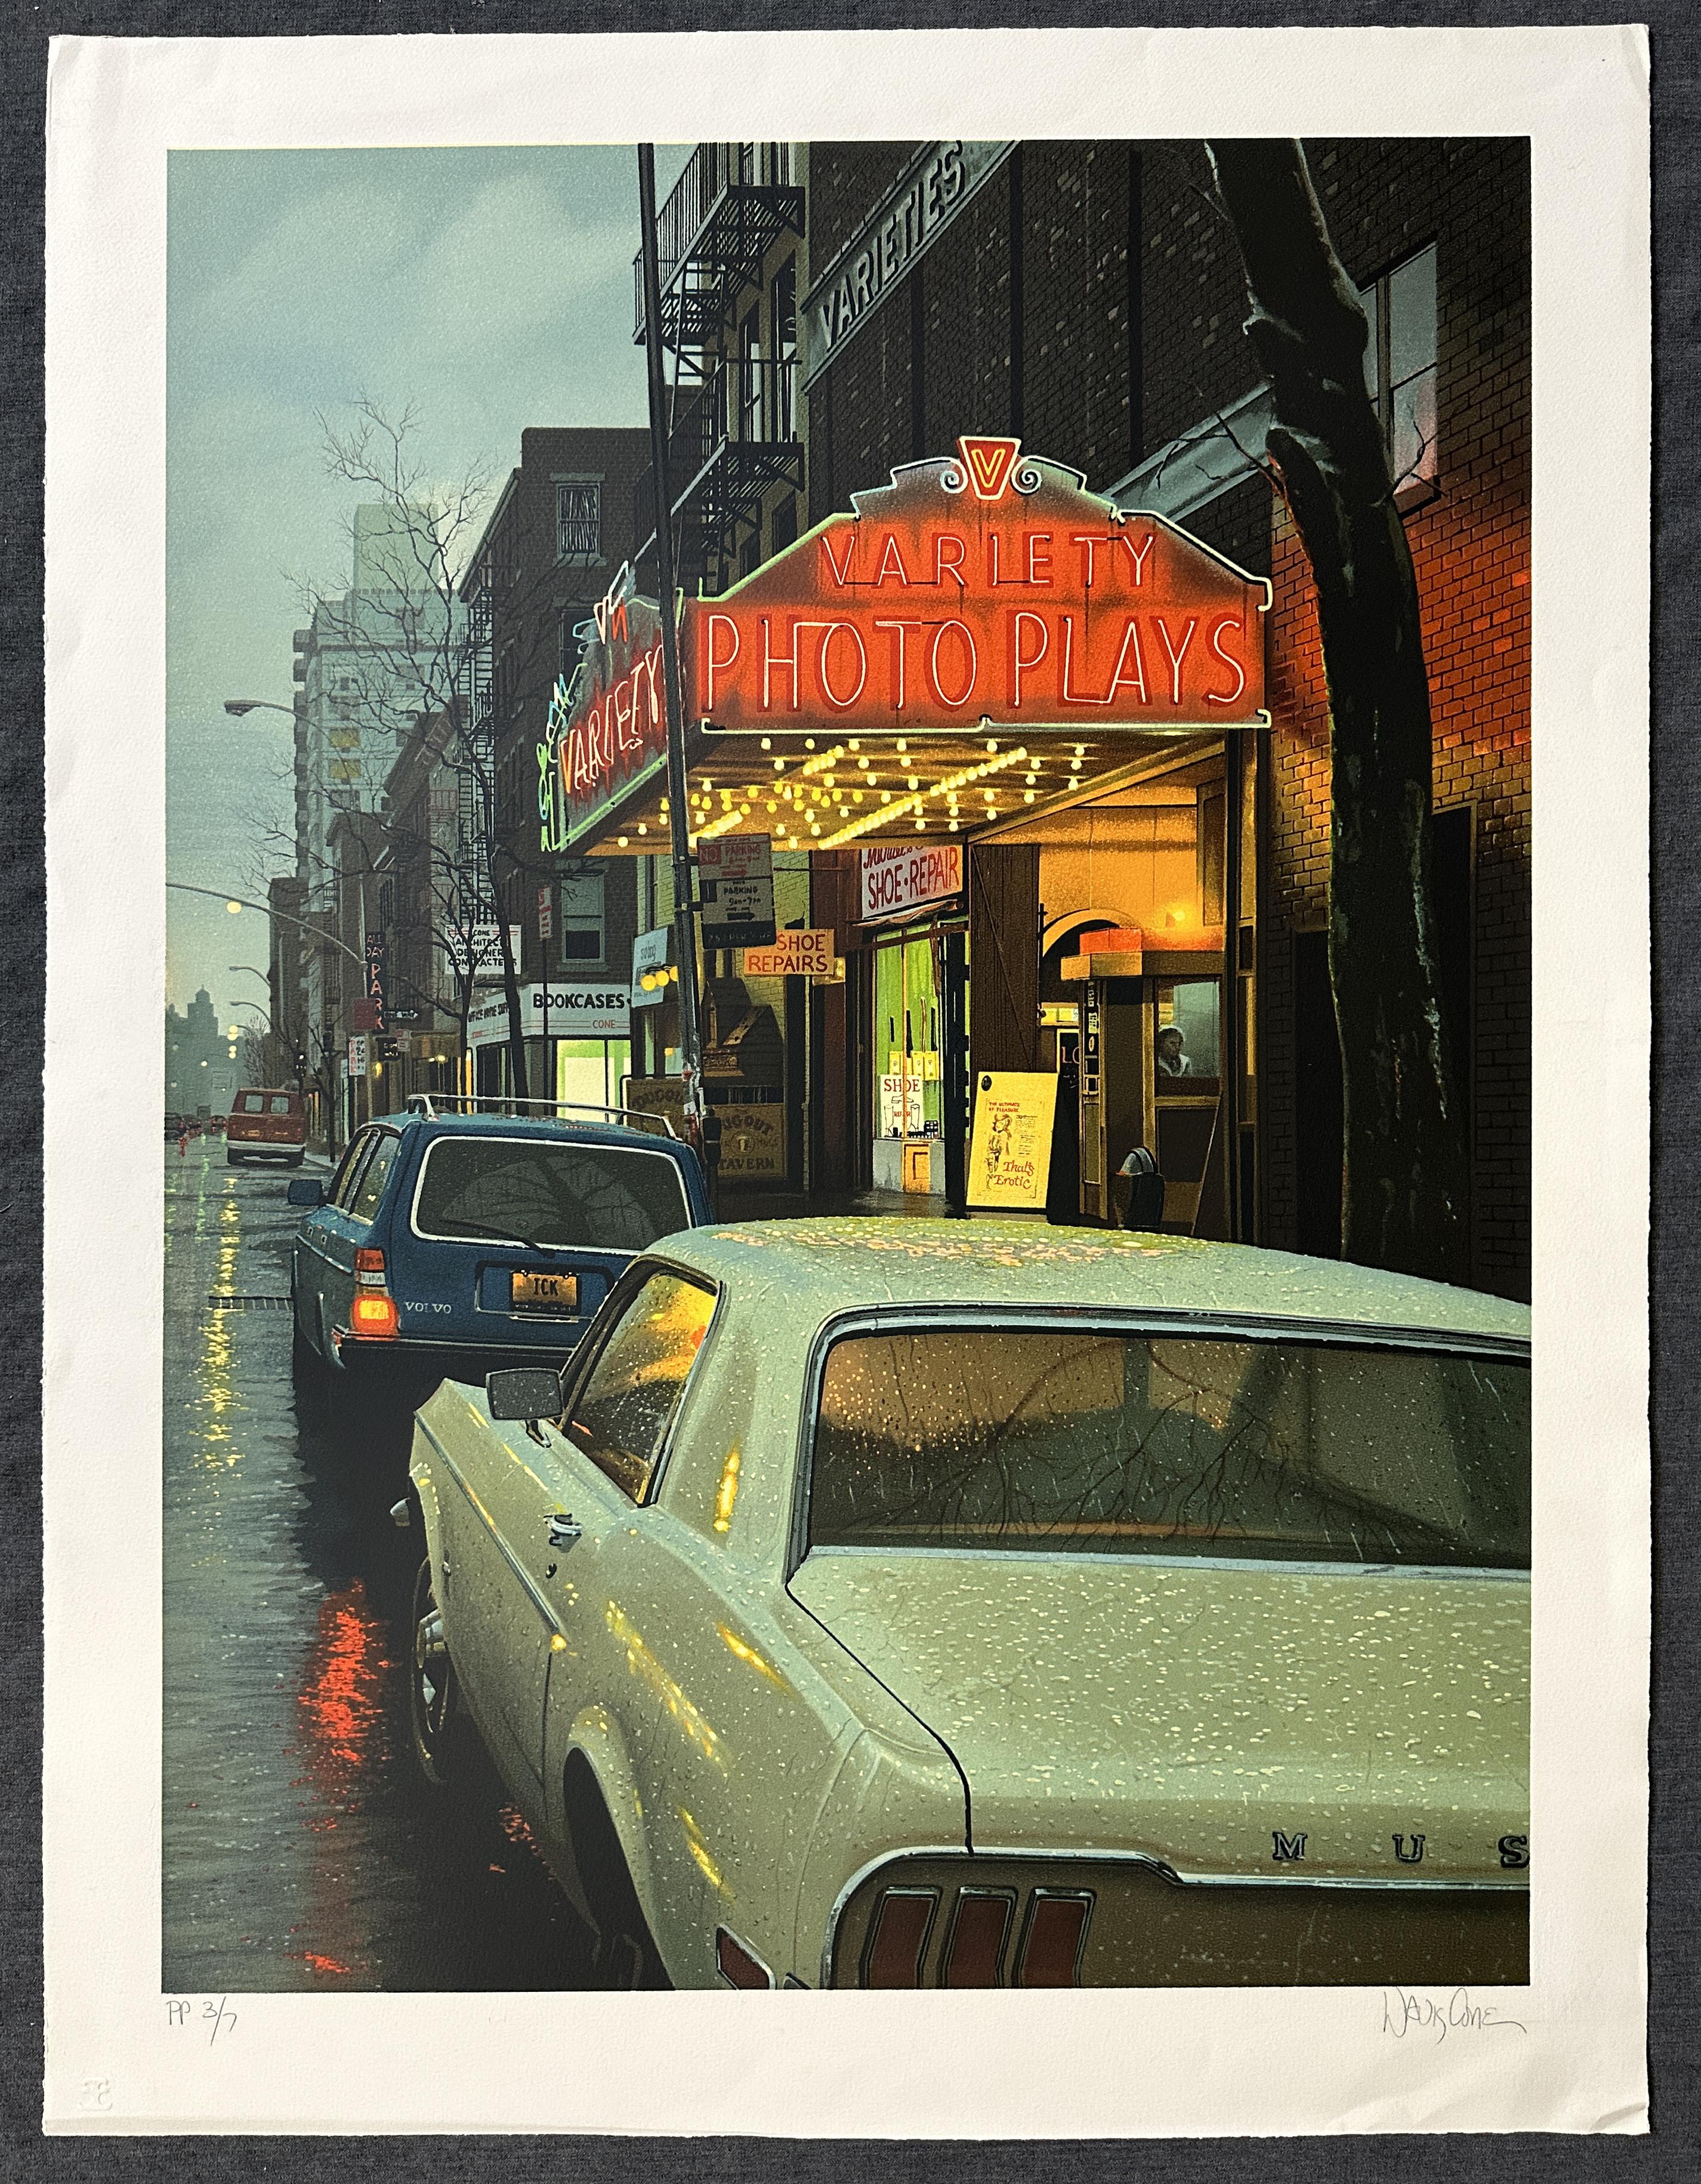 1983 Variety Photo Plays, signierte Lithographie in limitierter Auflage – Print von Davis Cone